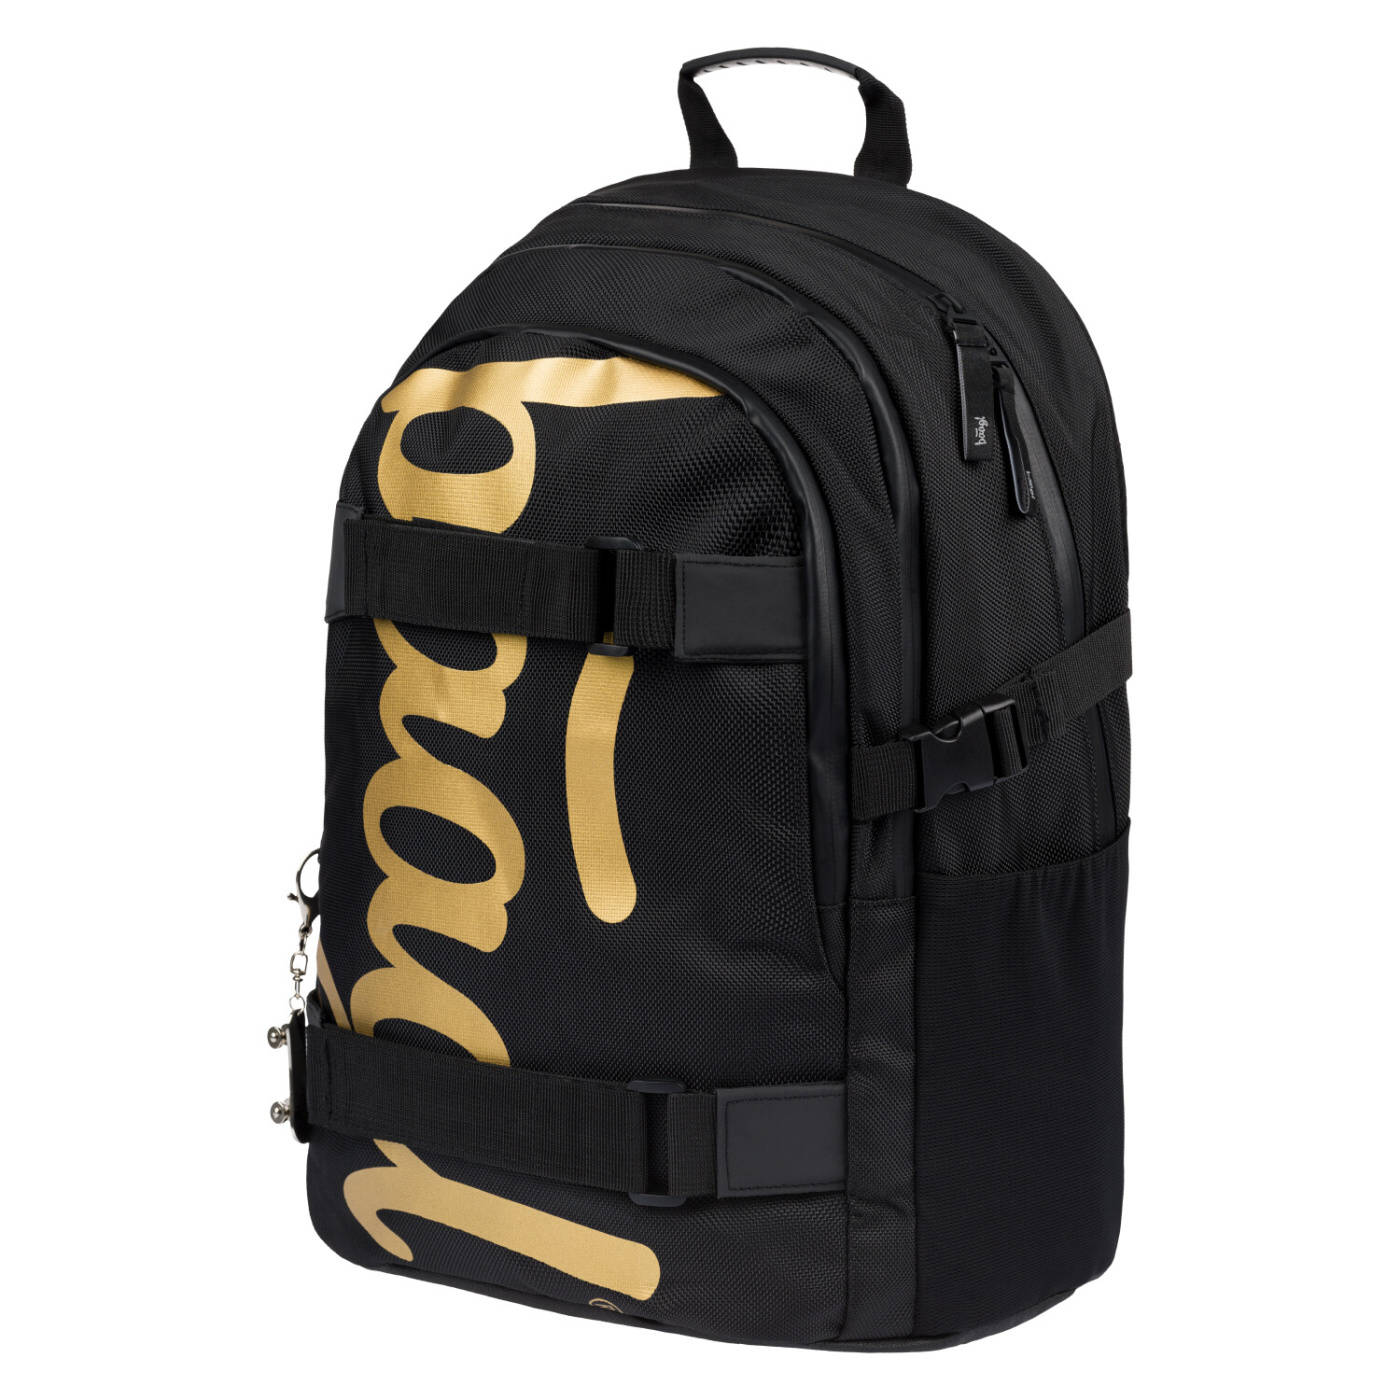 BAAGL Školní batoh Skate Gold A-30503 25 L černá